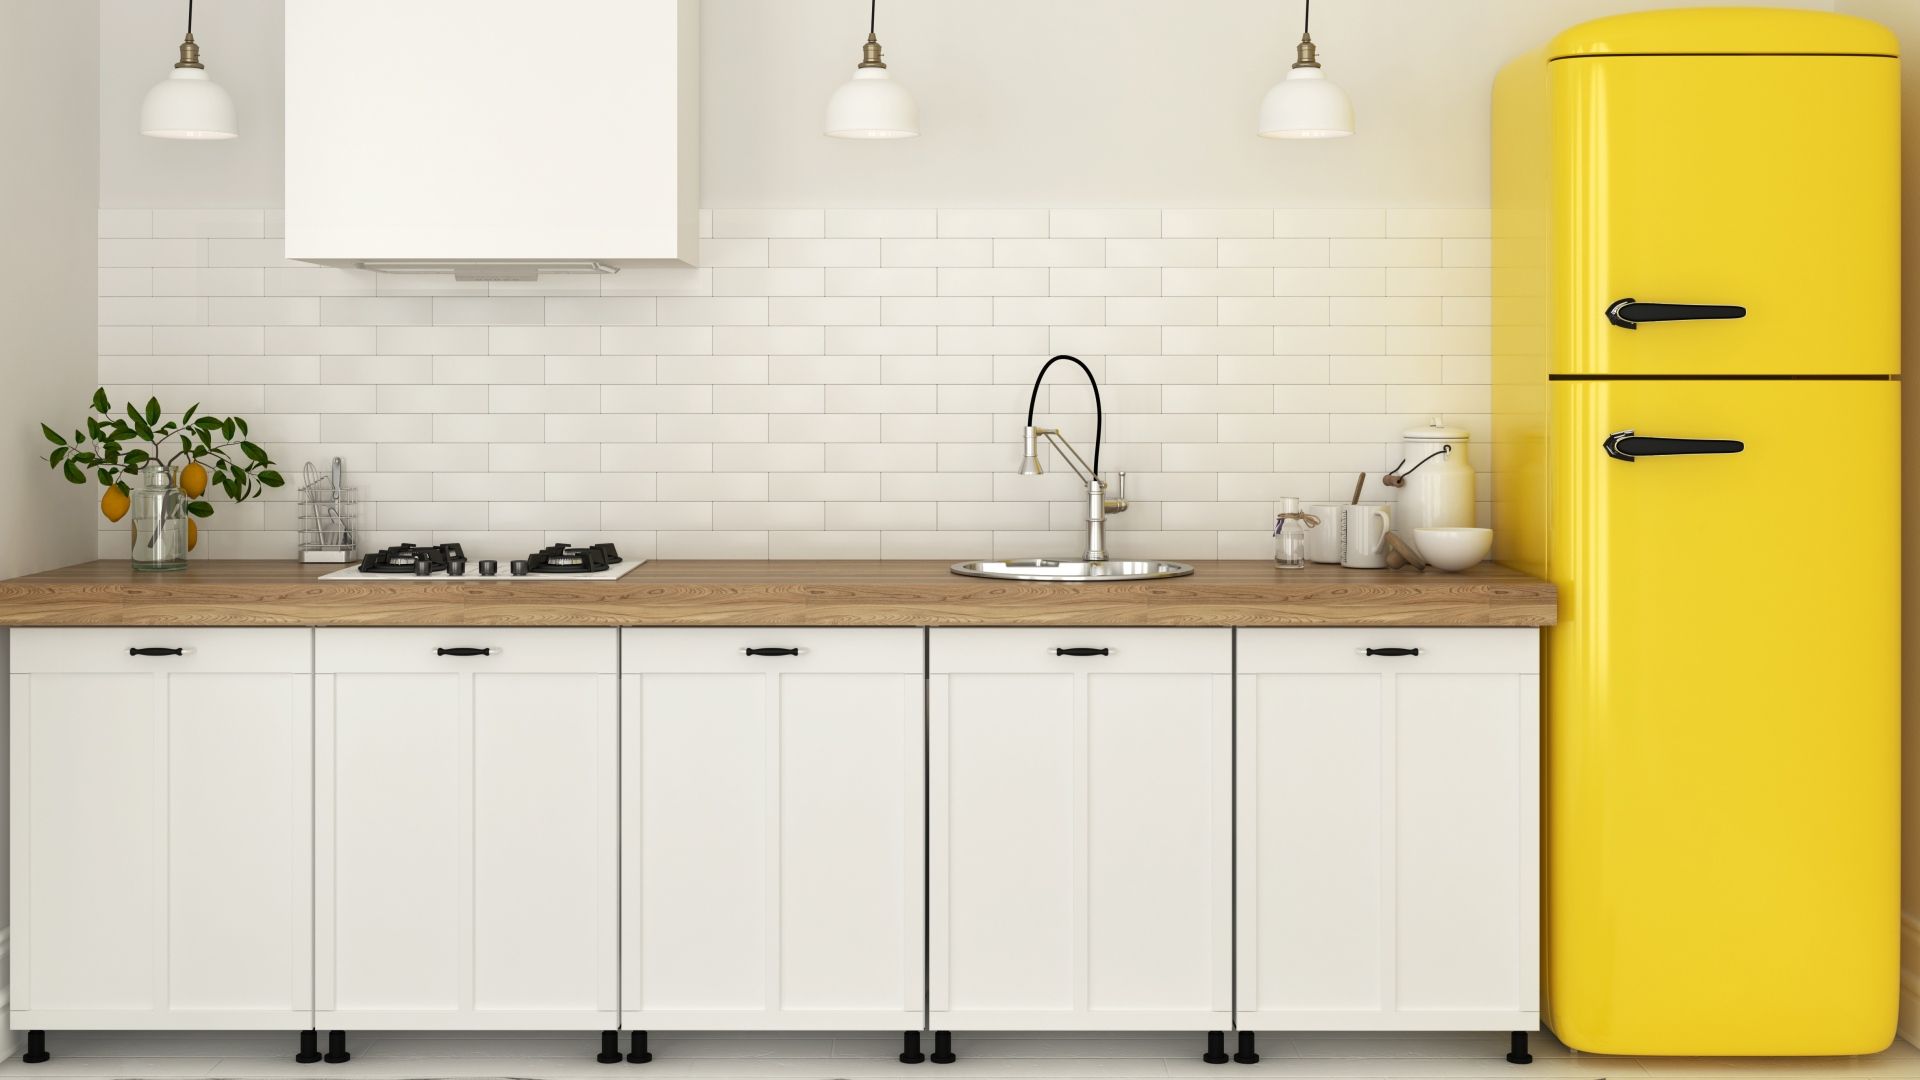 Geladeira duplex amarela à extrema direita da imagem ao lado de uma bancada de cozinha com armários brancos, pia e cooktop 